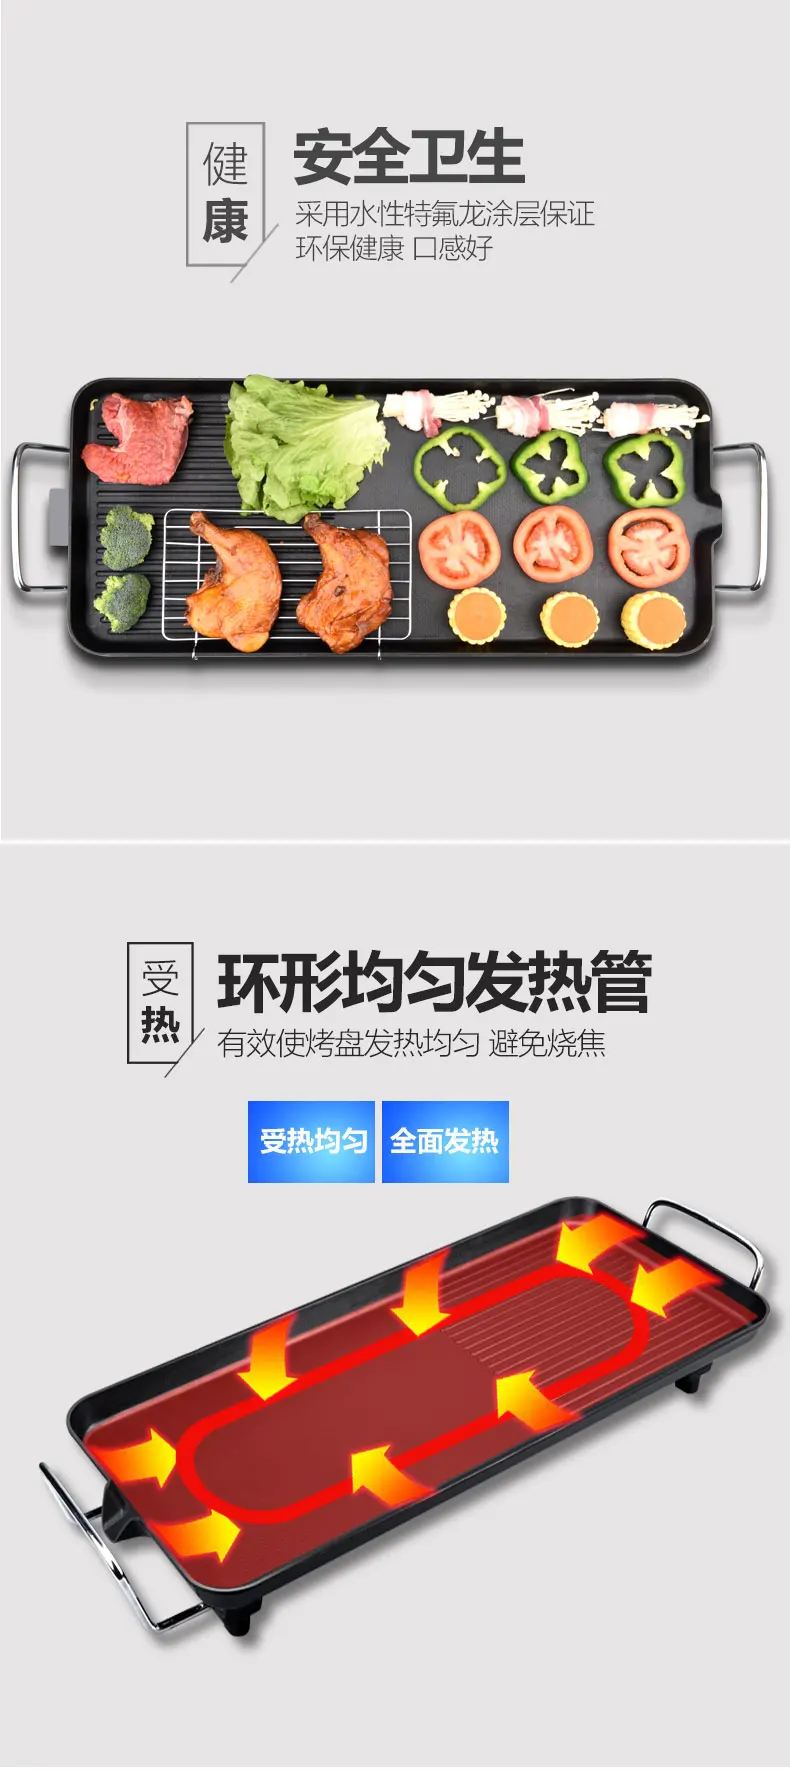 PY-02 электрические печи барбекю, корейской семьи не липкий печь, барбекю мяса, механические и электрические противень, Утюг pla